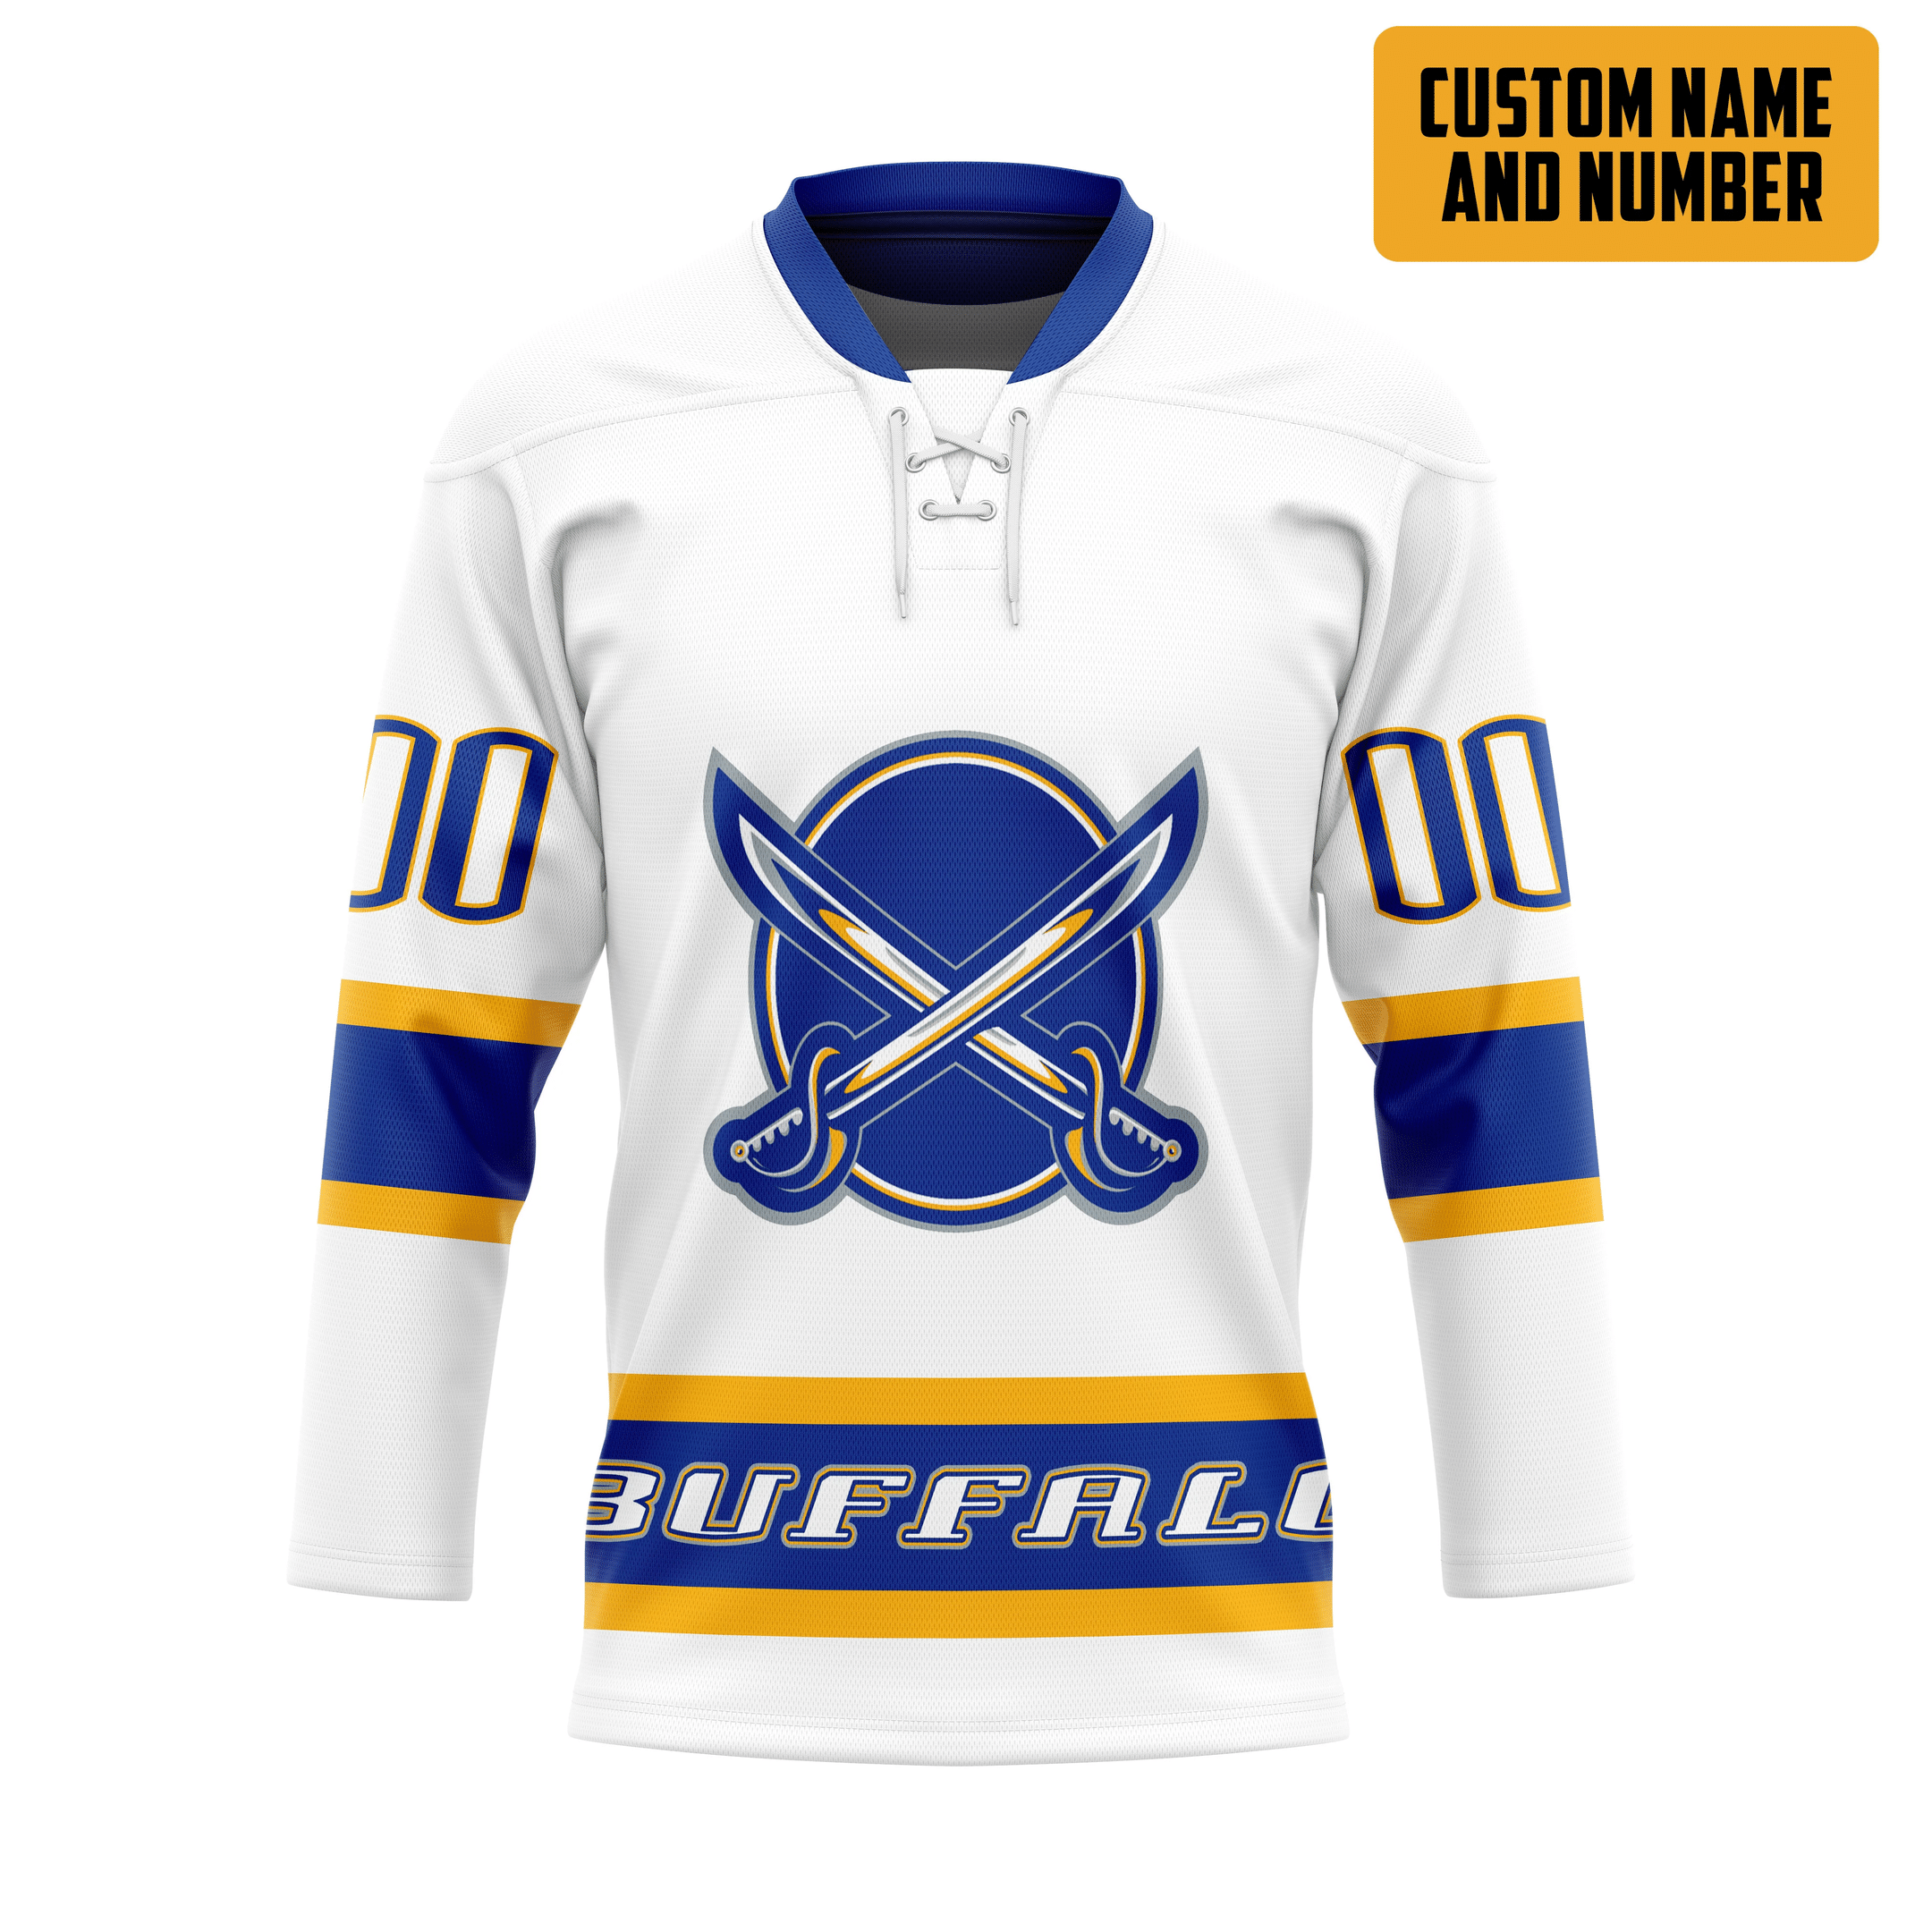 It's only $50 so don't miss out - Be sure to pick up a new hockey shirt today! 323